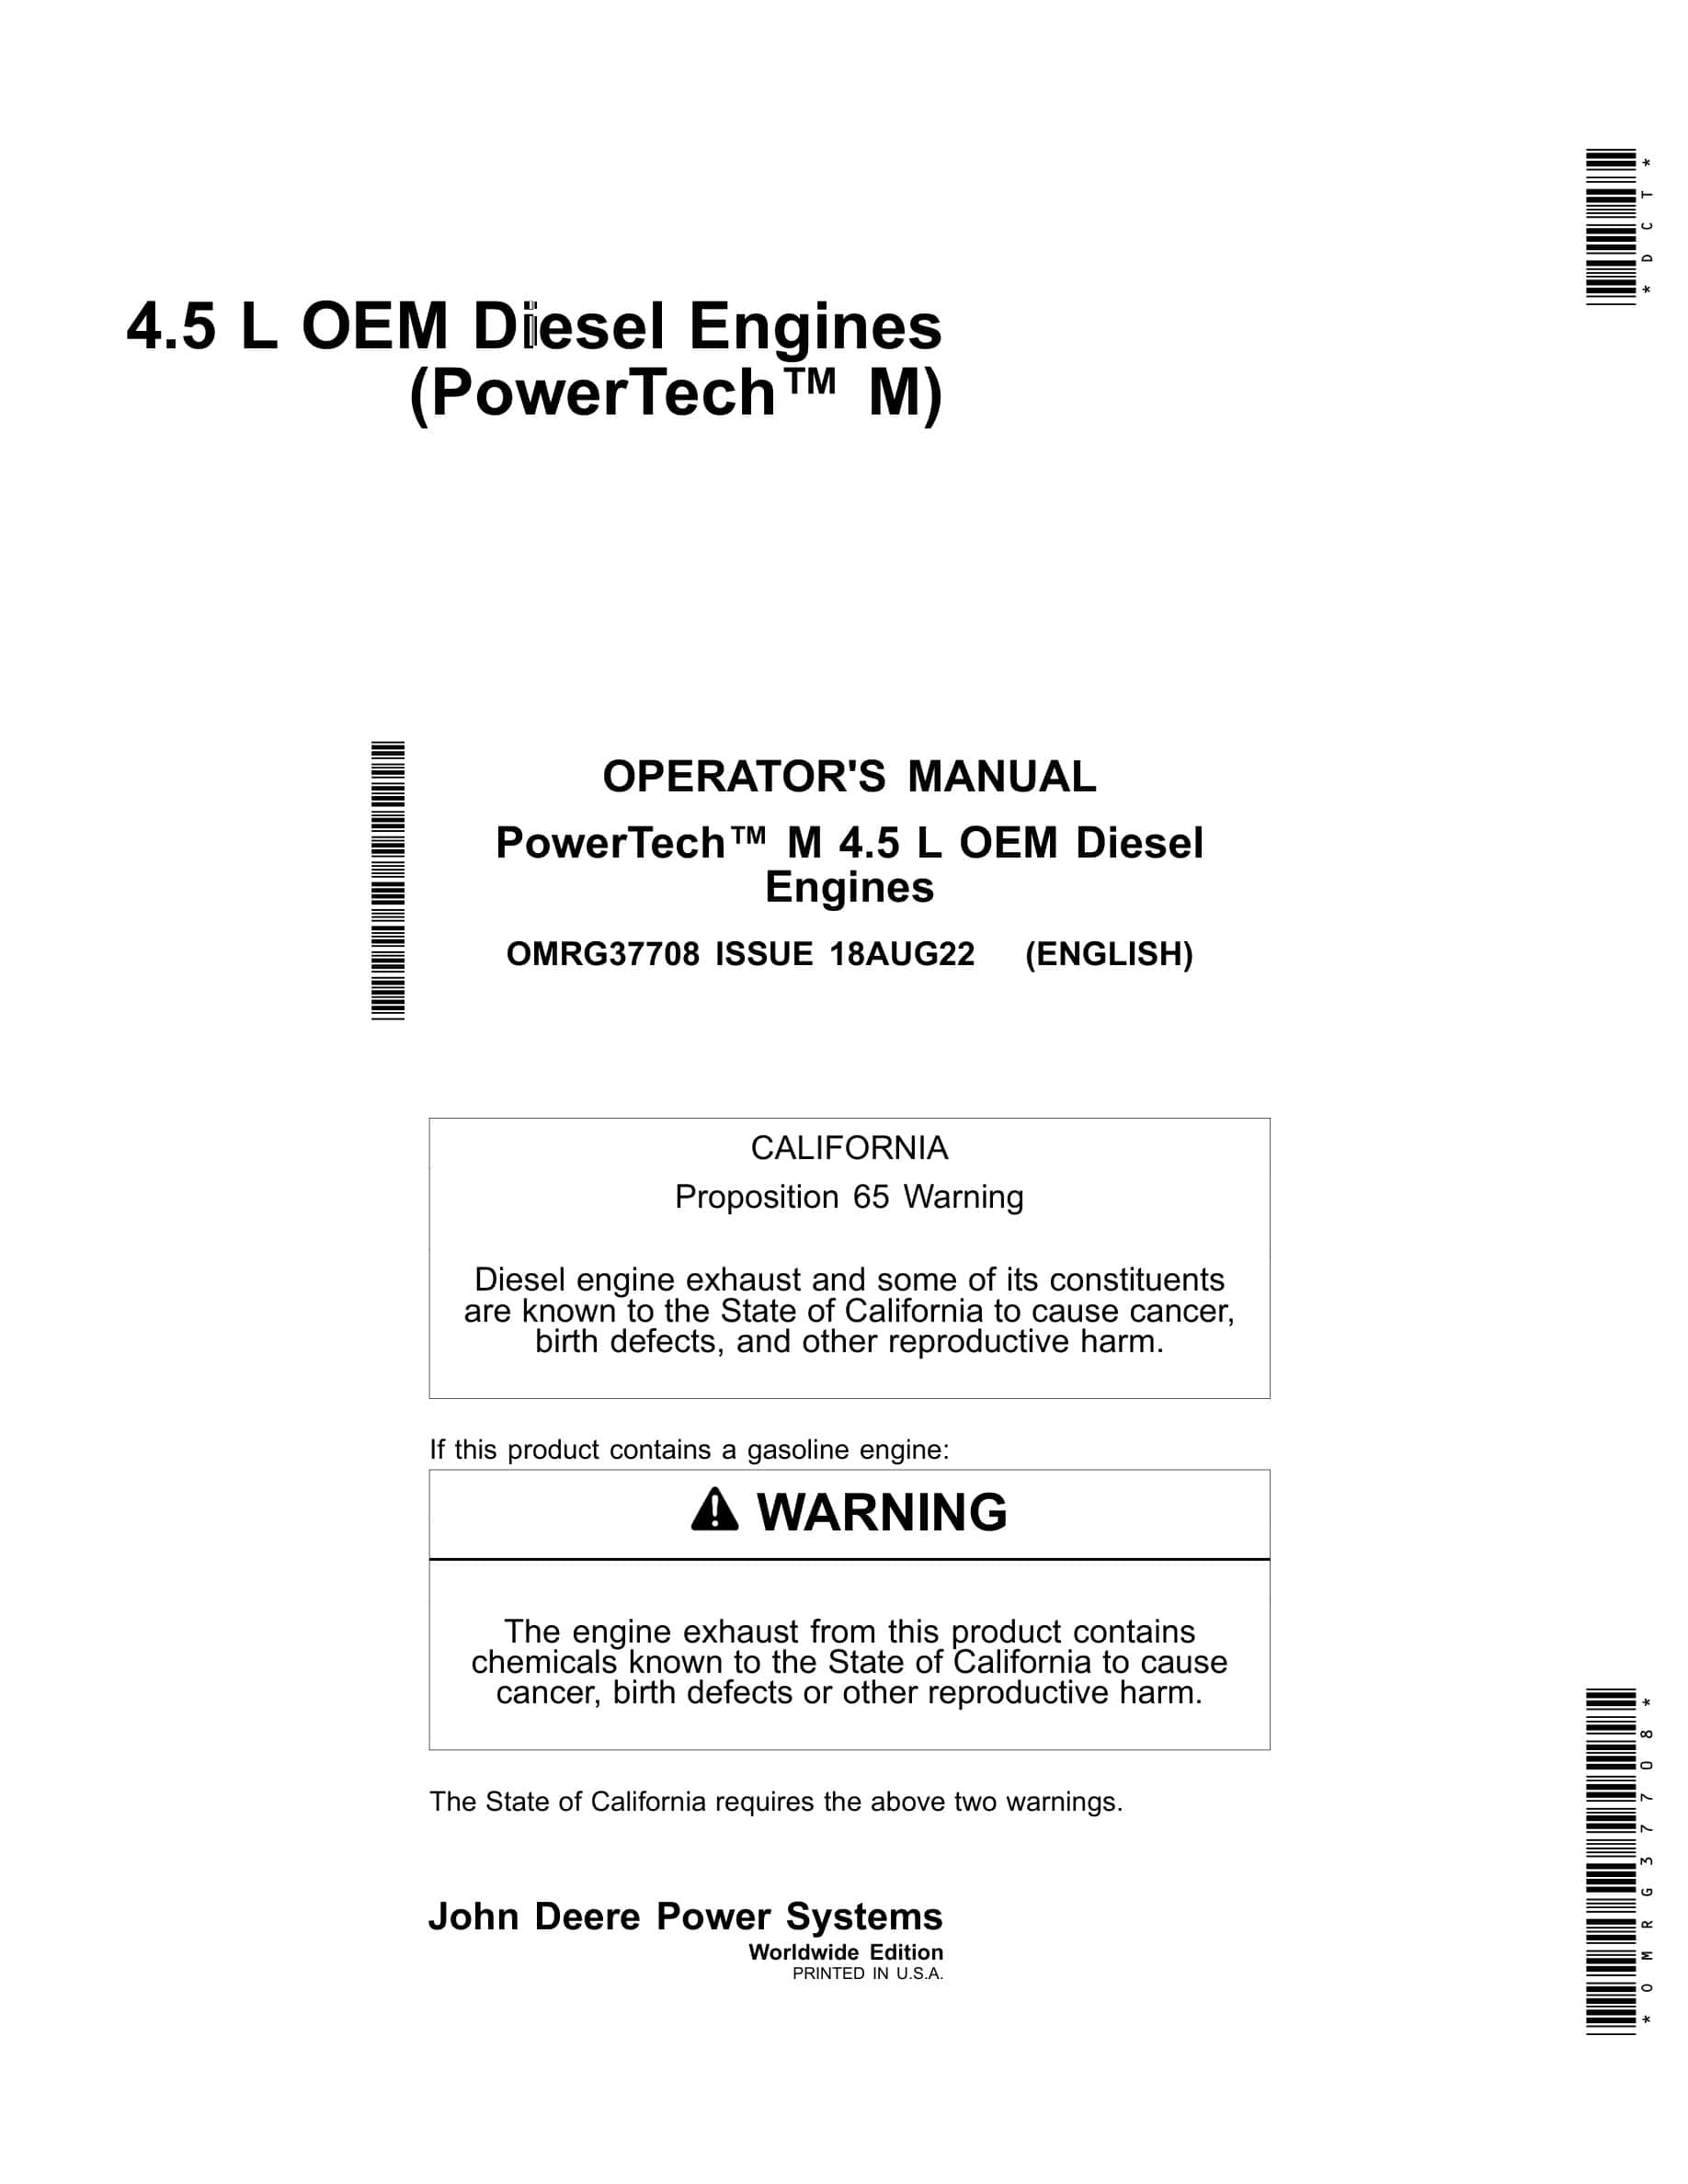 John Deere PowerTech 4.5 L OEM Diesel Engines Operator Manual OMRG37708-1